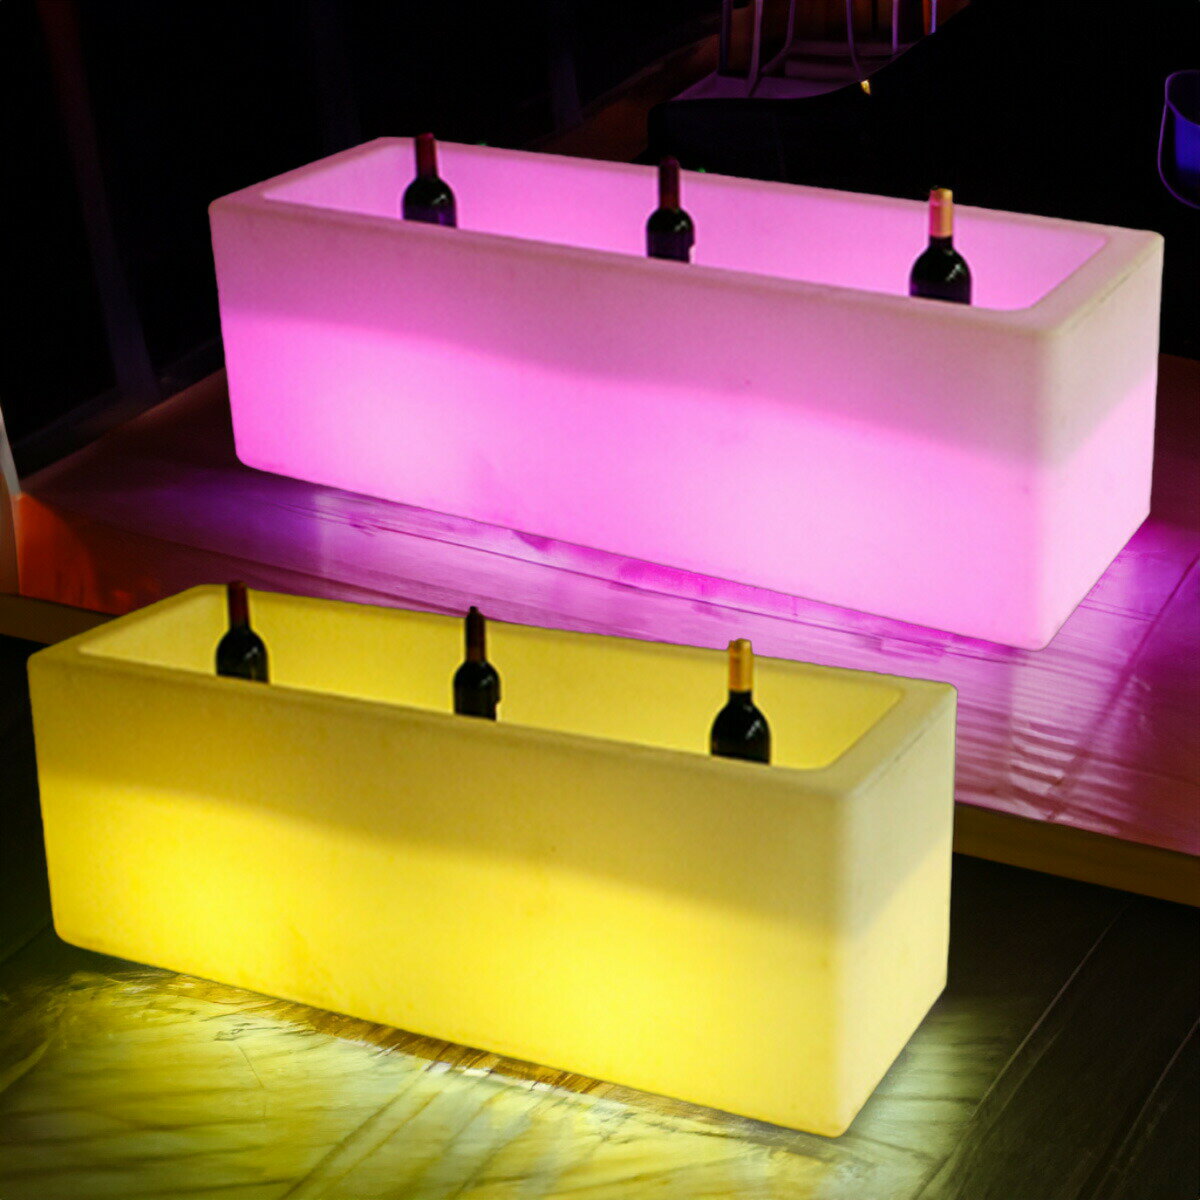 [120 40cm] VeroMan 光る 収納ブロック LED ライト リモコン付き 光るオブジェ ワインラック 屋外 装飾 イベント バー ラウンジ 光る家具 韓国インテリア